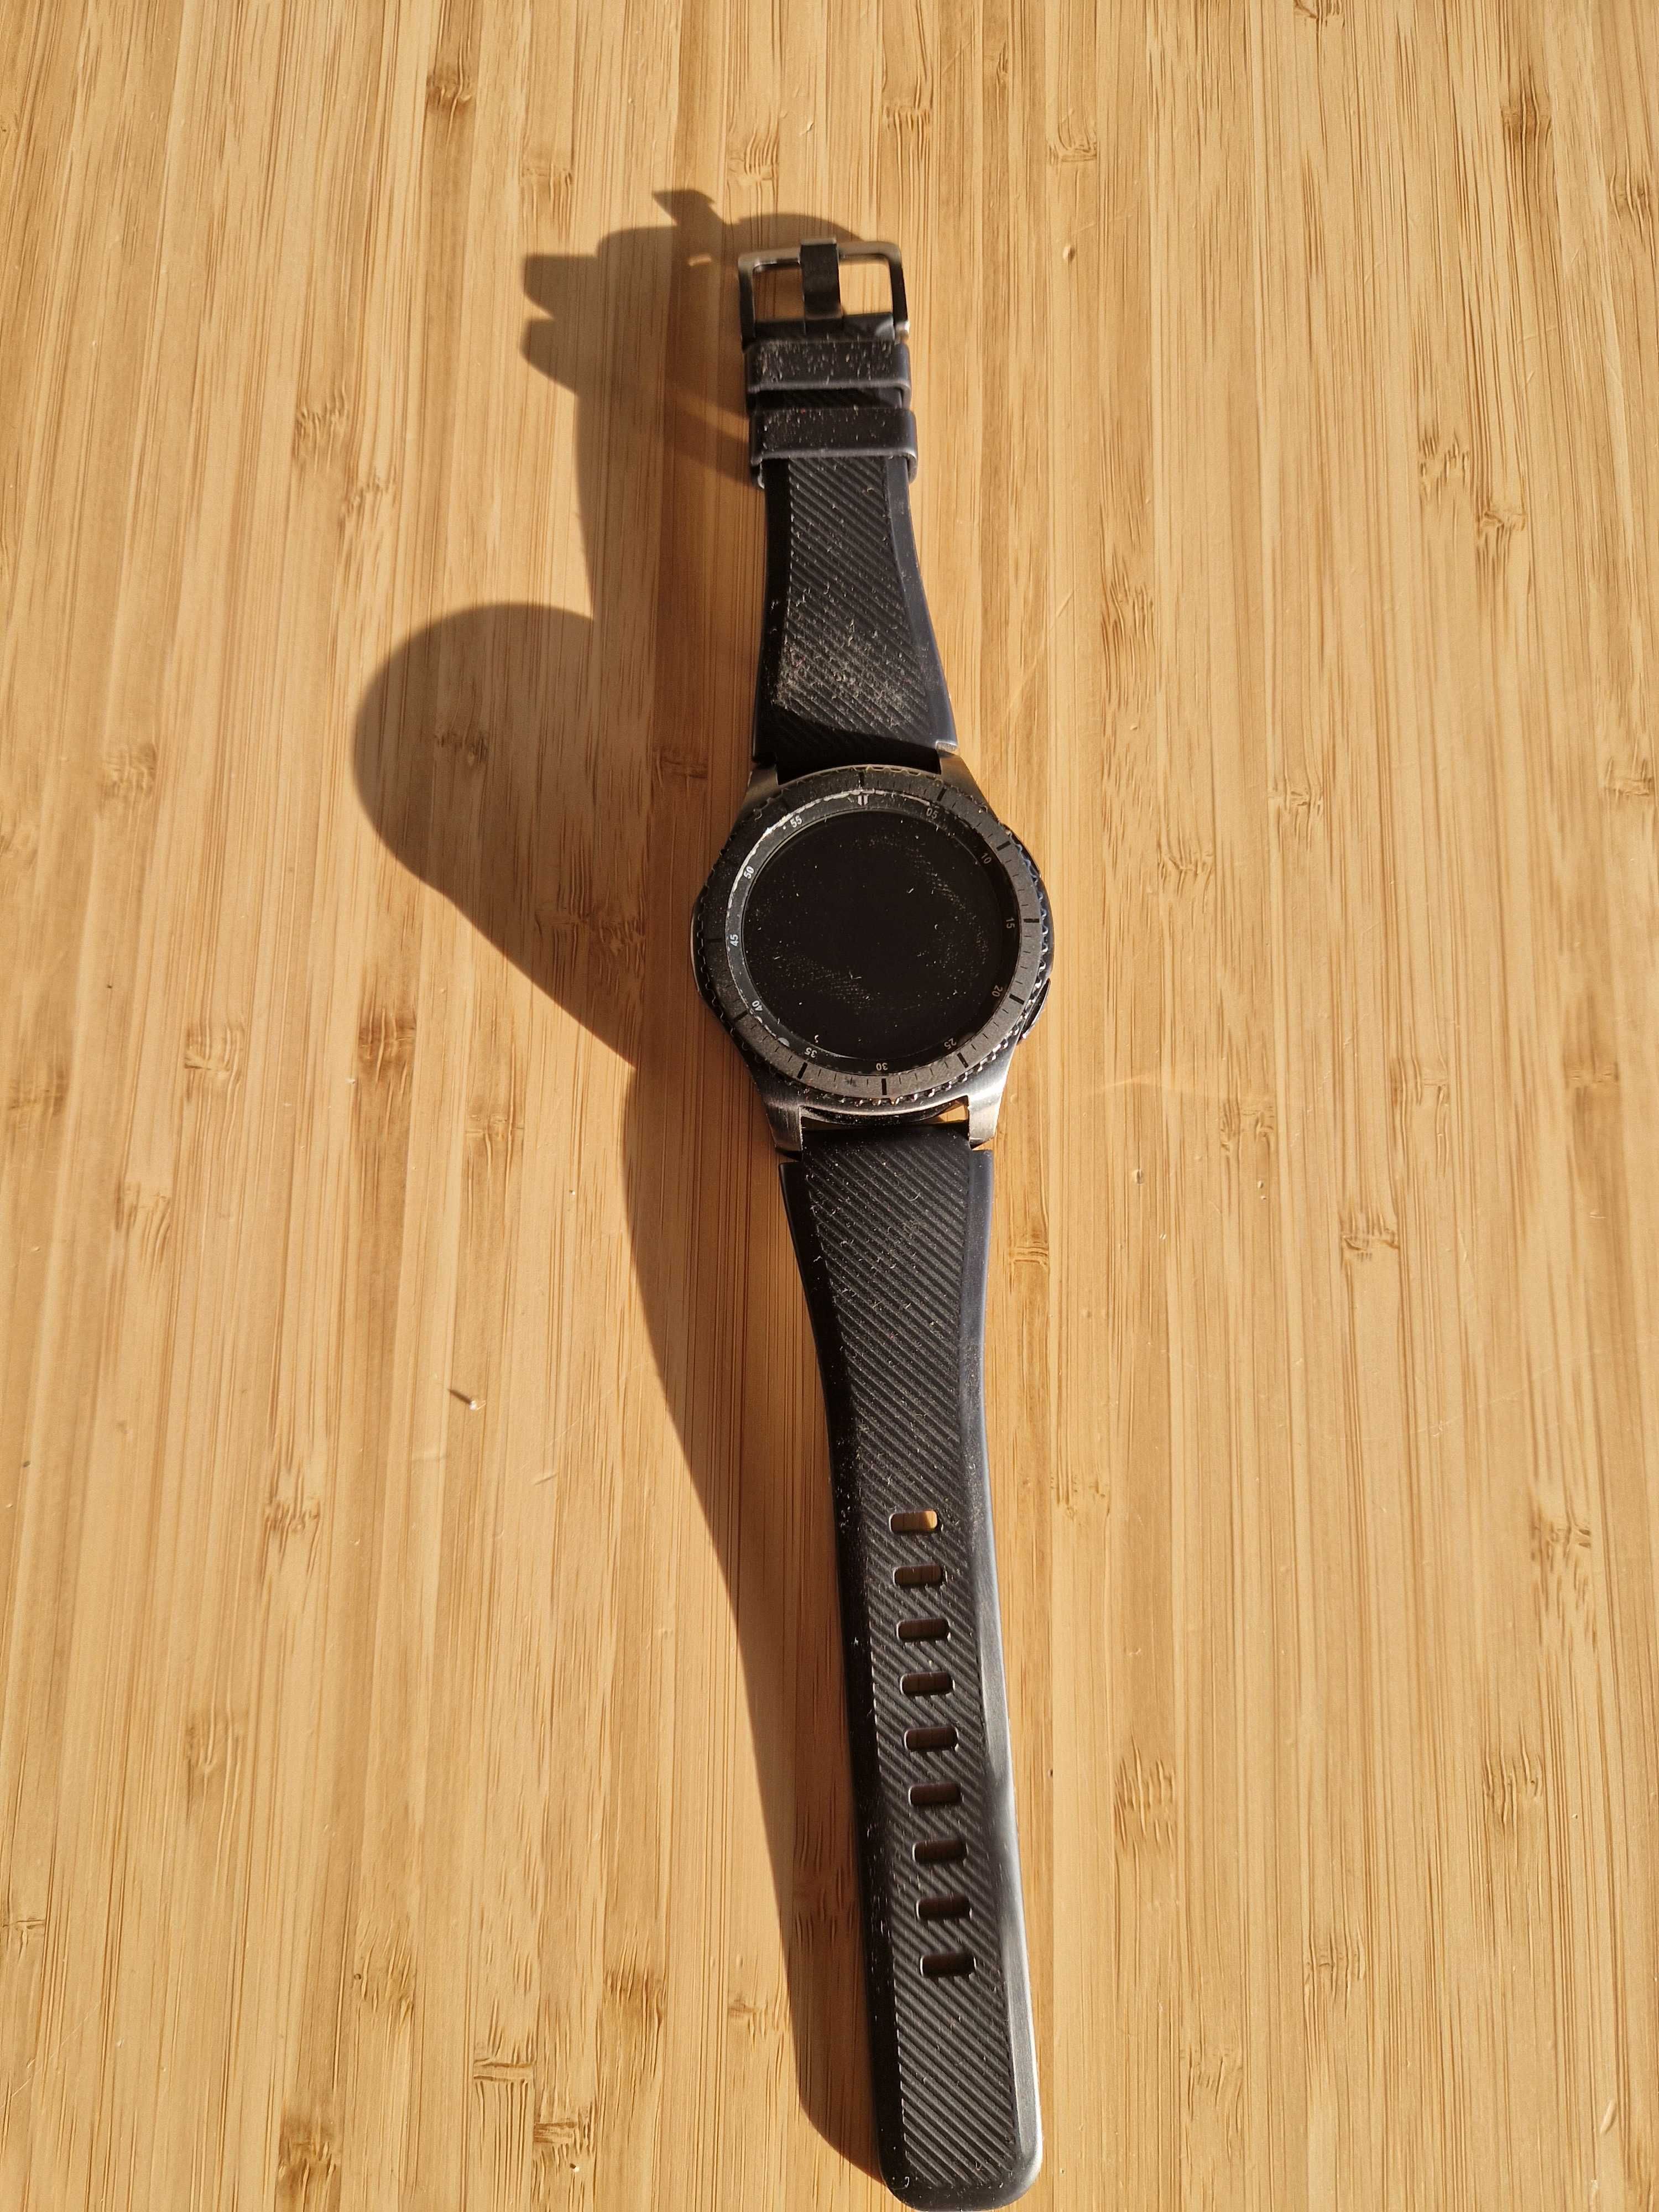 Smart Watch Samsung S3 Frontier